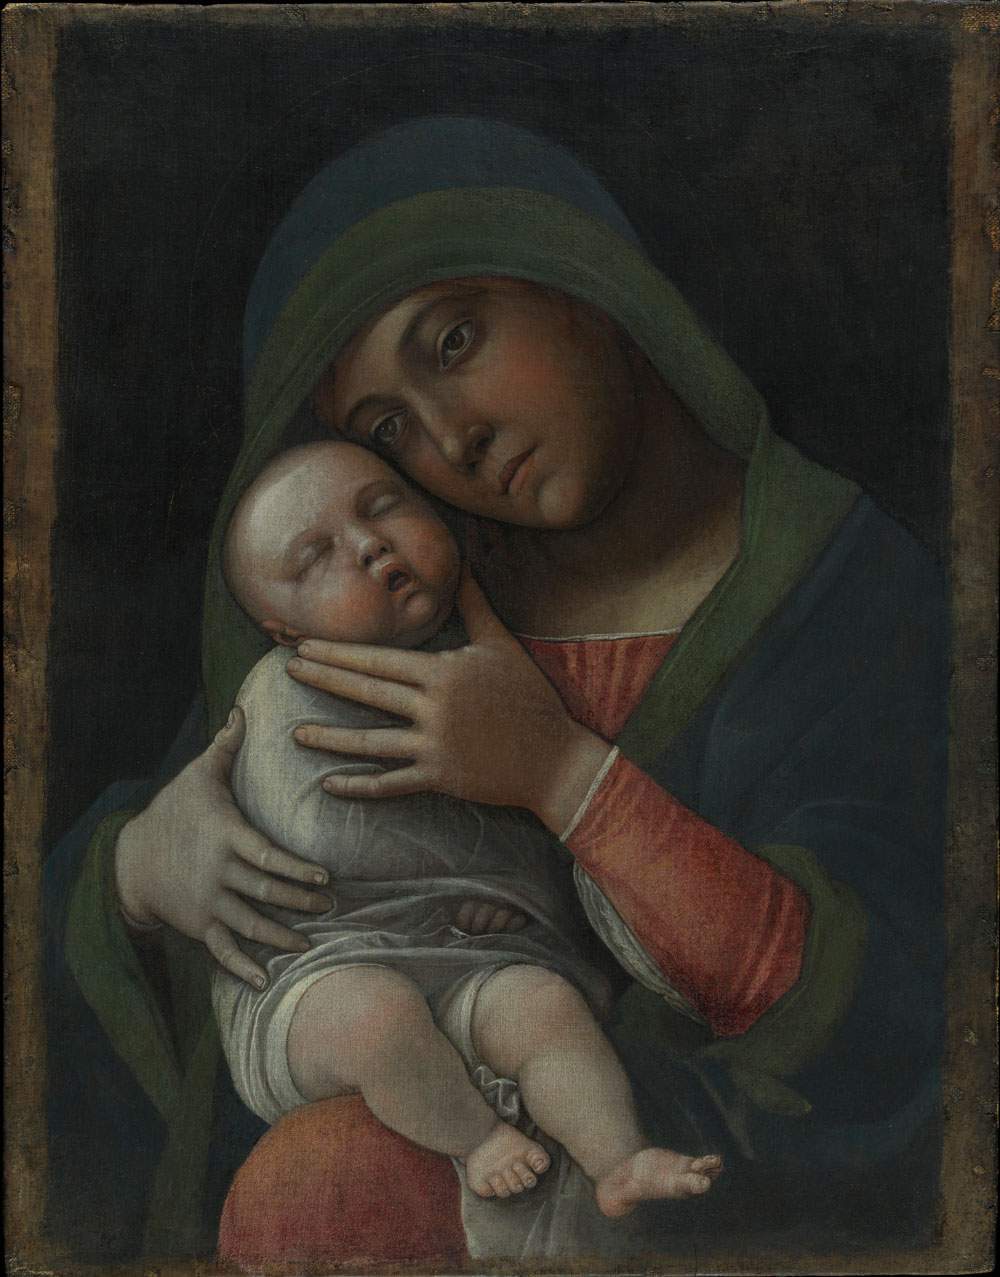 Mantegna redécouvert. Au musée Poldi Pezzoli, l'exposition-dossier sur la restauration de Mantegna est en cours.